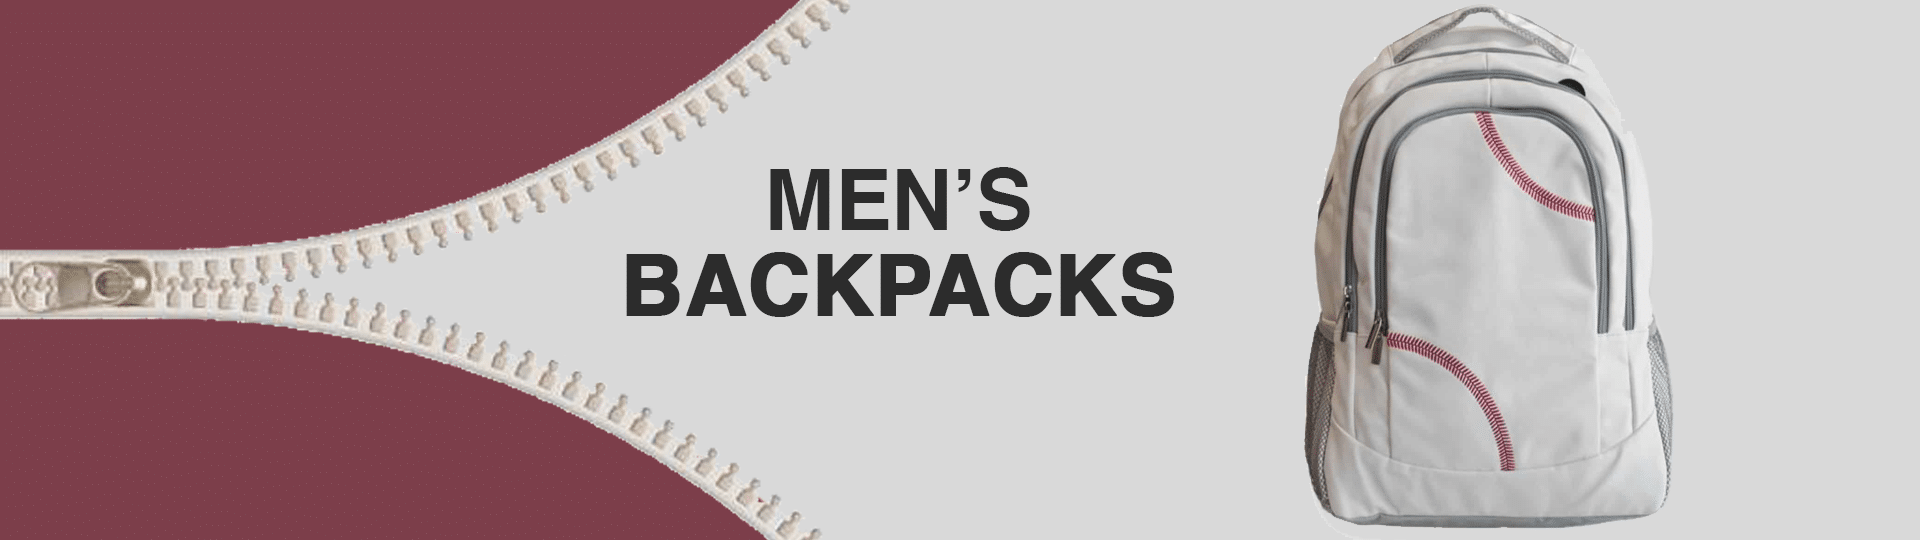 Men’s_Backpacks